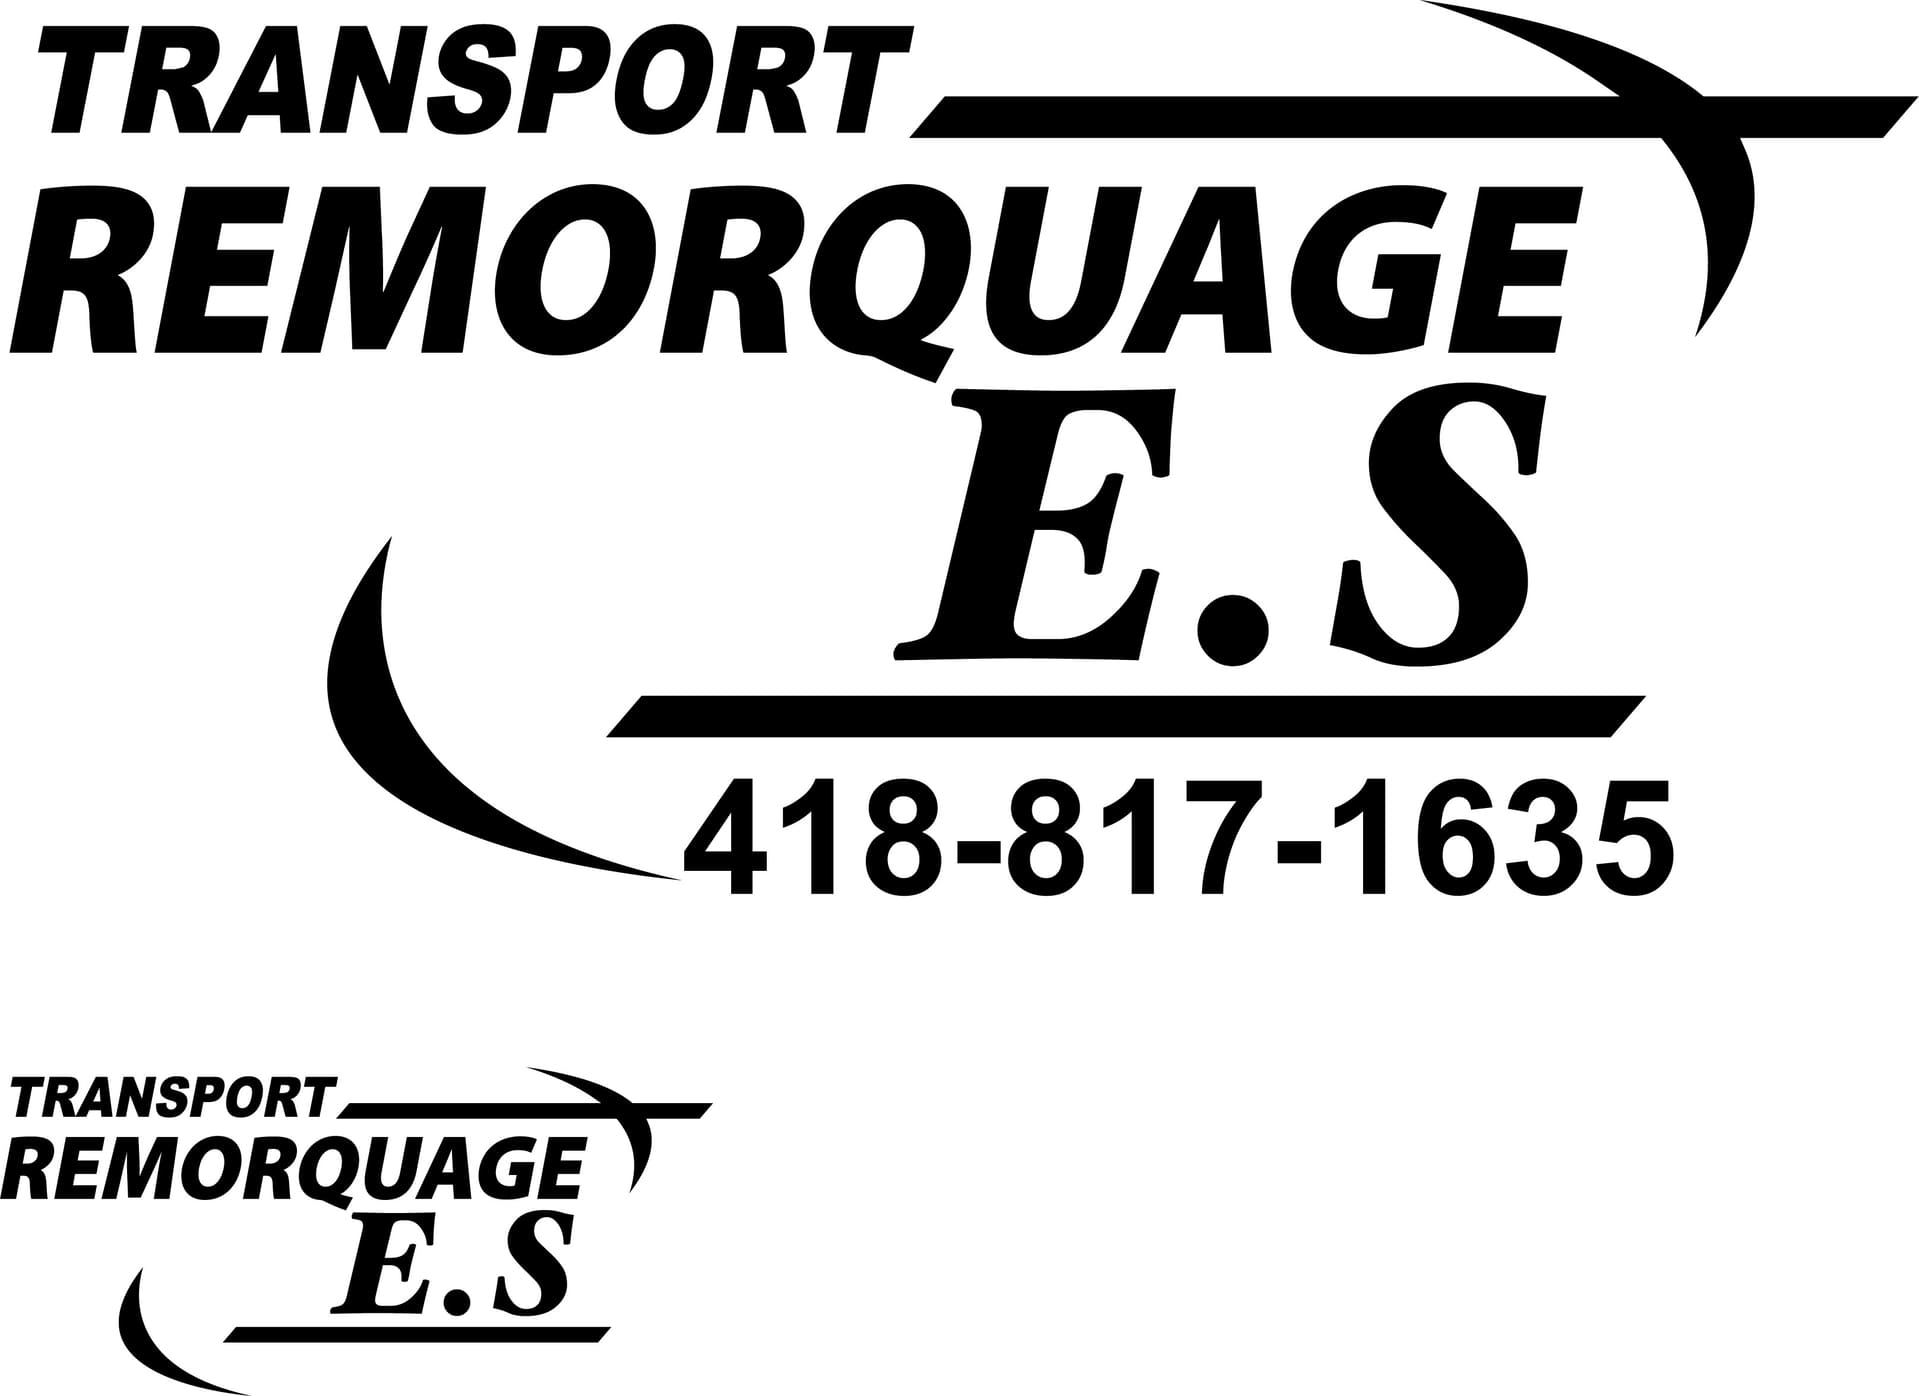 Transport remorquage ES